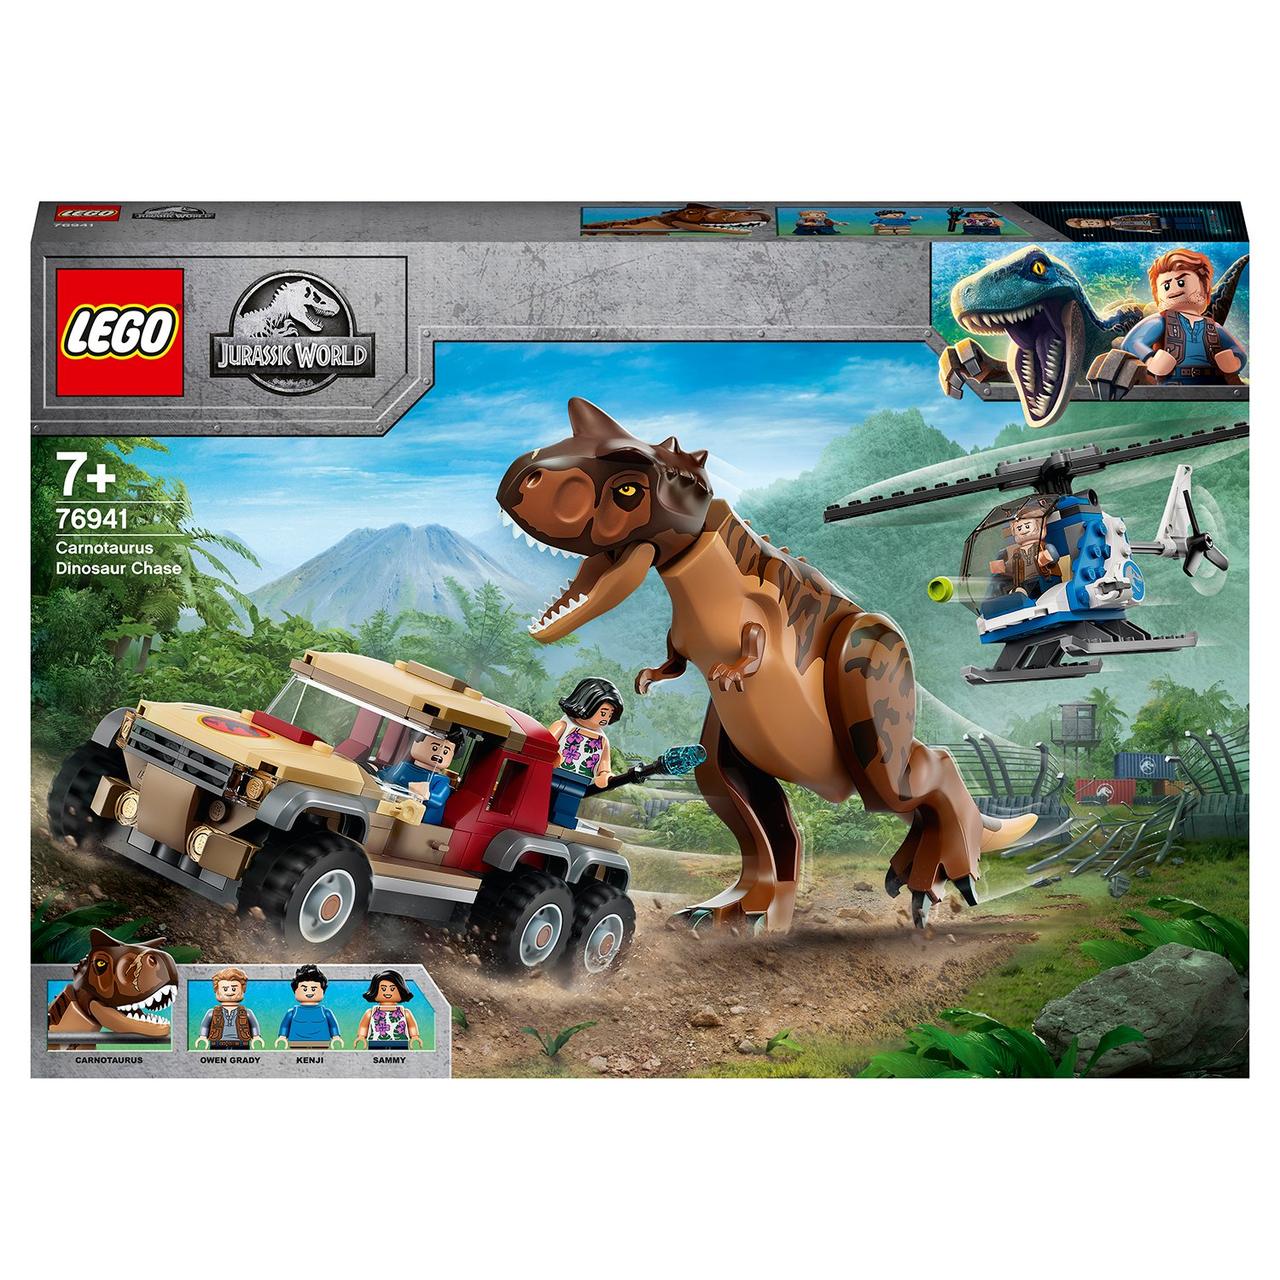 76941 Lego Jurassic World Погоня за карнотавром, Лего Мир Юрского периода